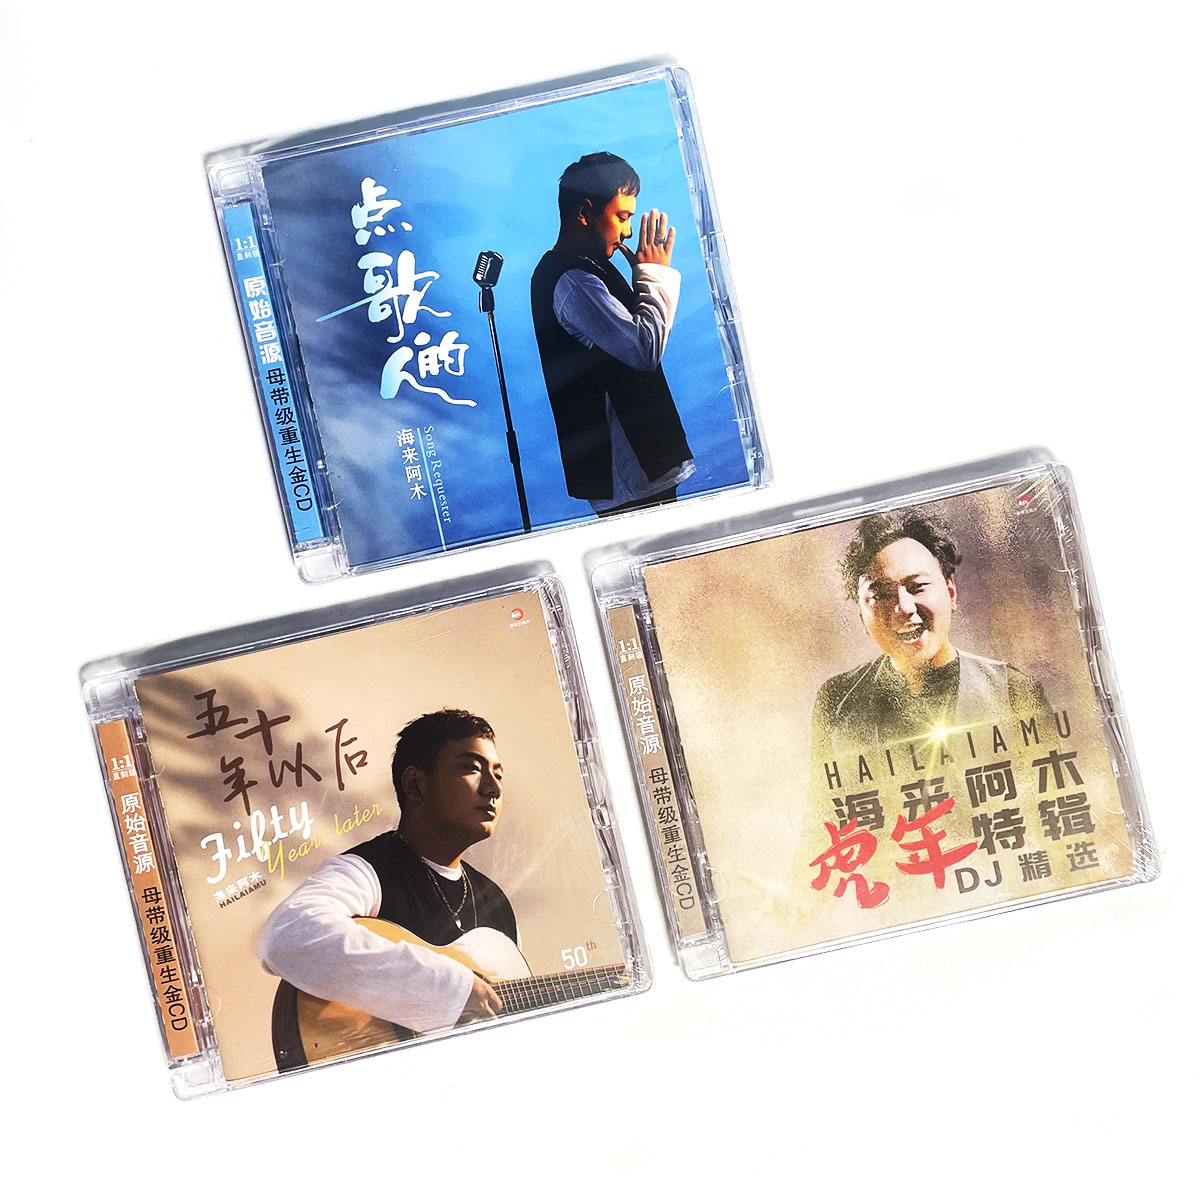 海来阿木CD专辑 点歌的人 五十年以后 DJ精选 流行音乐车载cd碟片